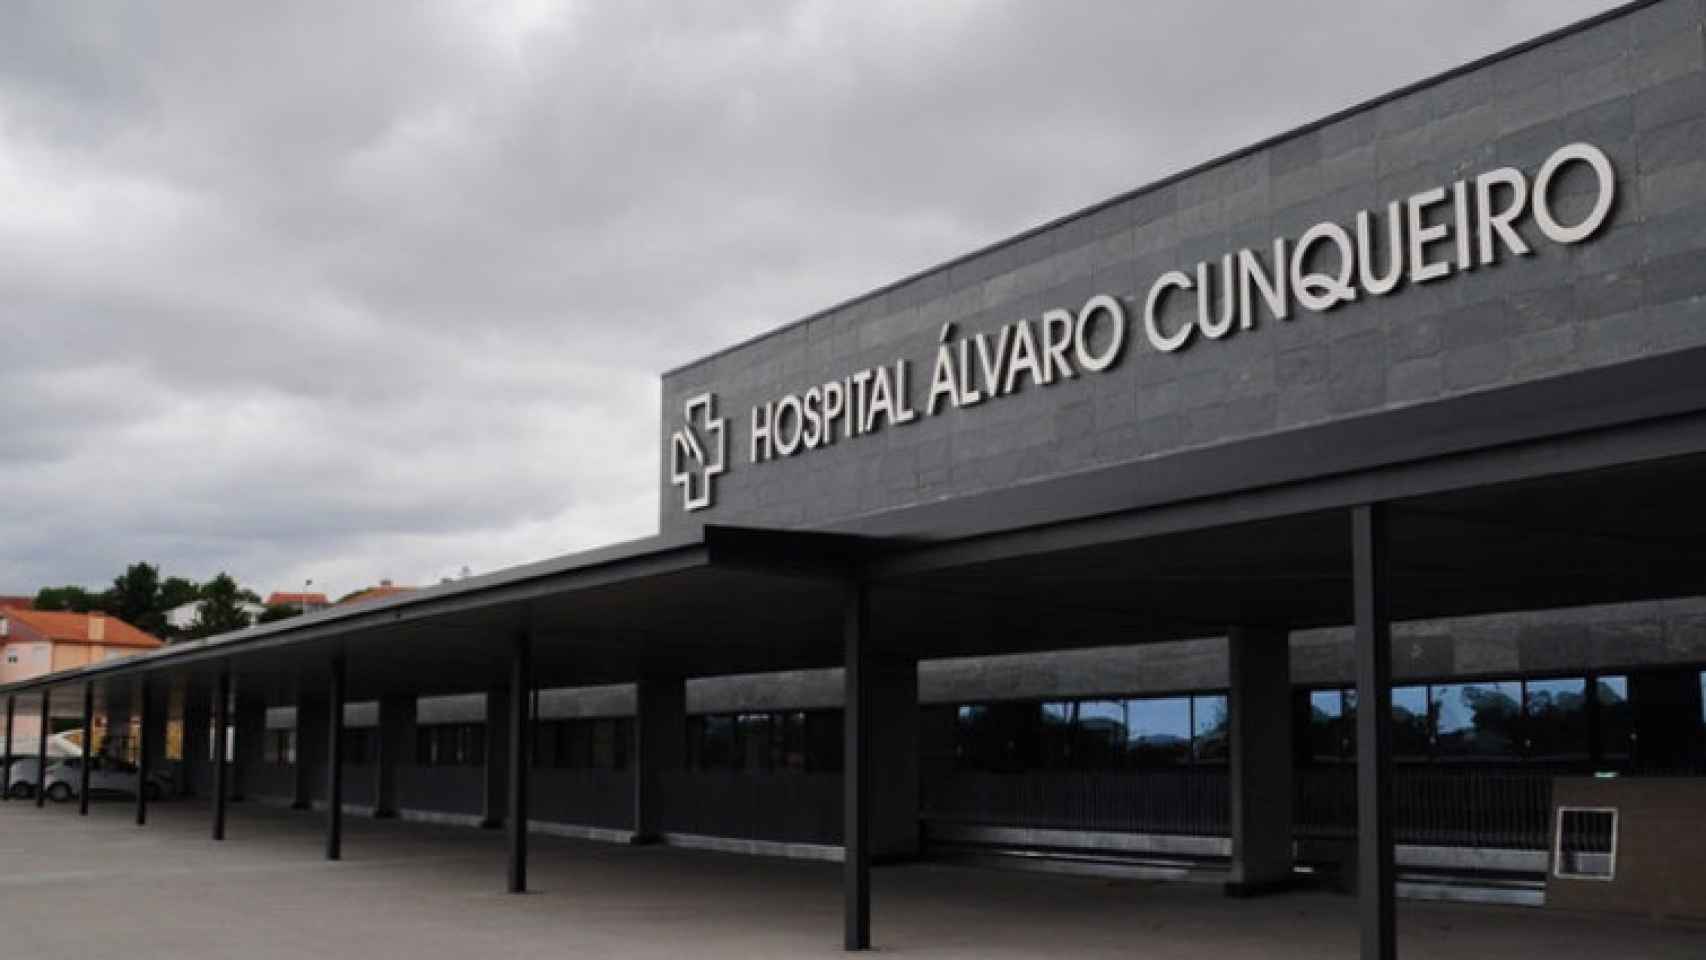 El Hospital Álvaro Cunqueiro de Vigo (Pontevedra) / CG